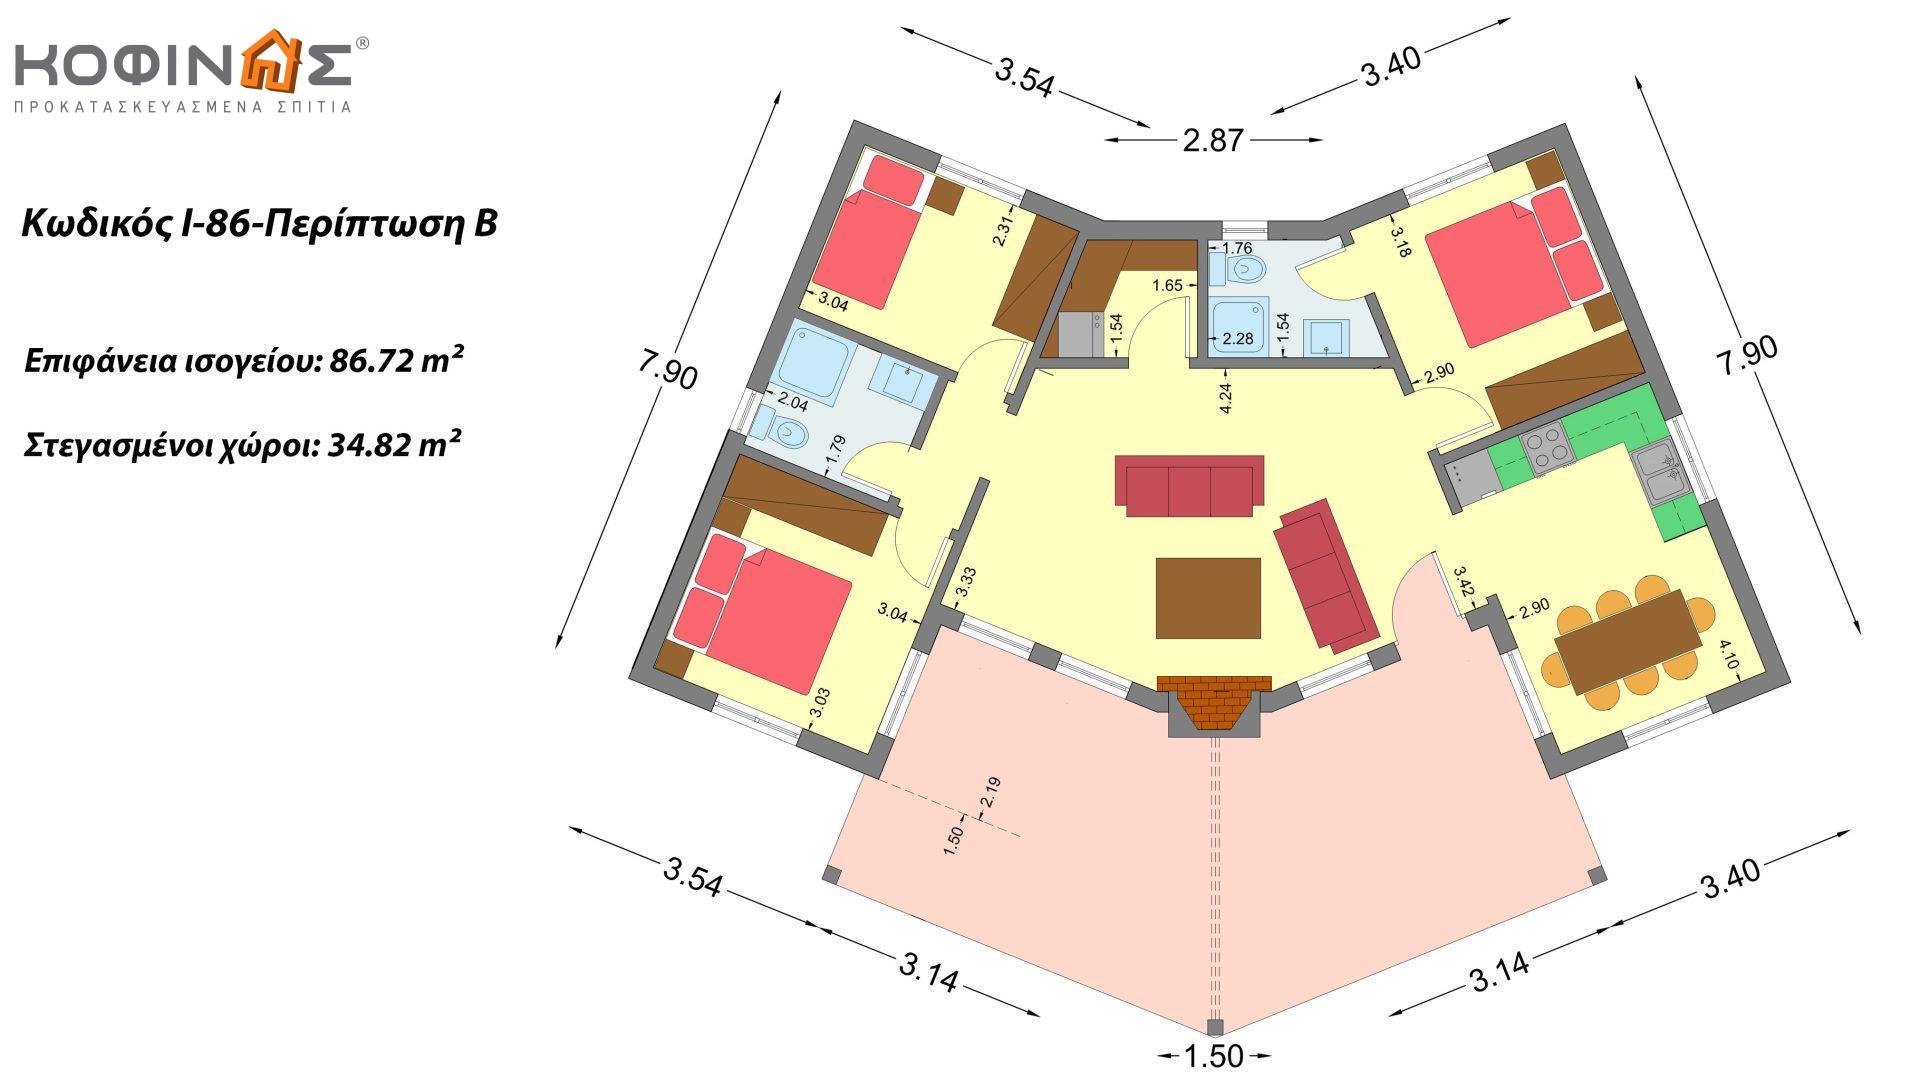 Ισόγεια Κατοικία I-86 συνολικής επιφάνειας 86,72 τ.μ., στεγασμένοι χώροι 38,69 τ.μ (Περίπτωση Α), στεγασμένοι χώροι 34,82 τ.μ. (Περίπτωση Β)